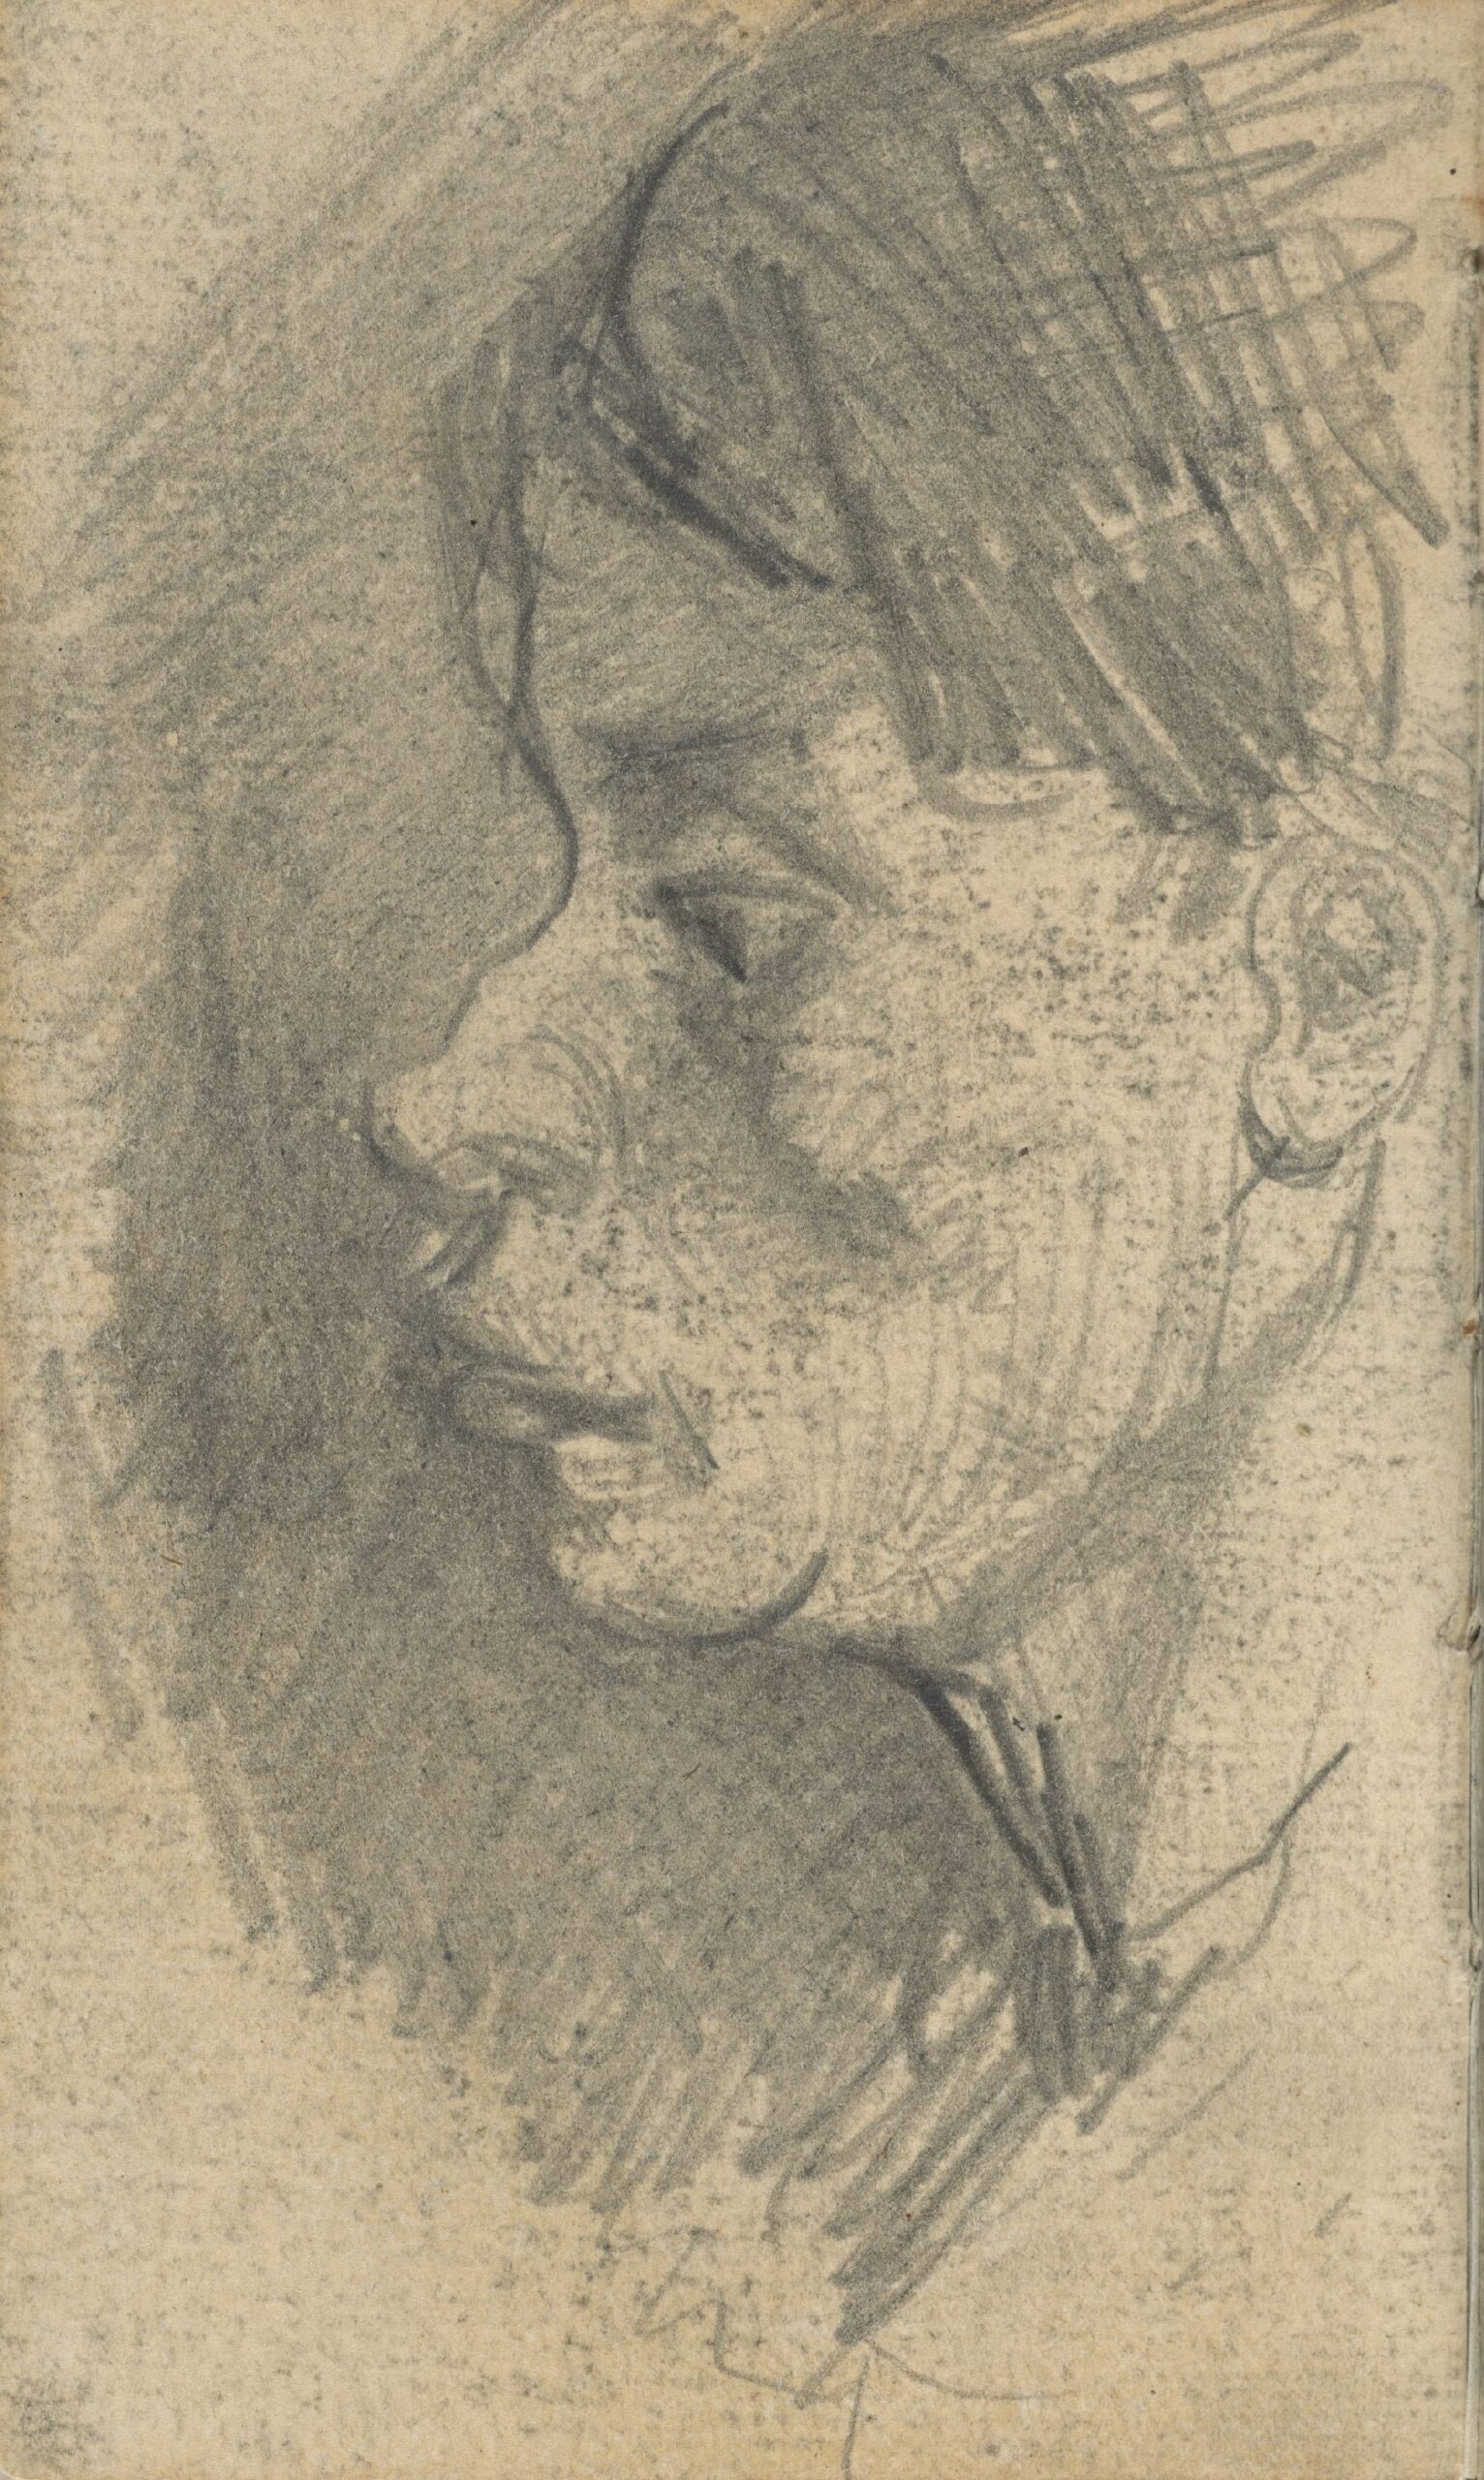 Kop van een vrouw Vincent van Gogh (1853 - 1890), Nuenen, december 1884-januari 1885